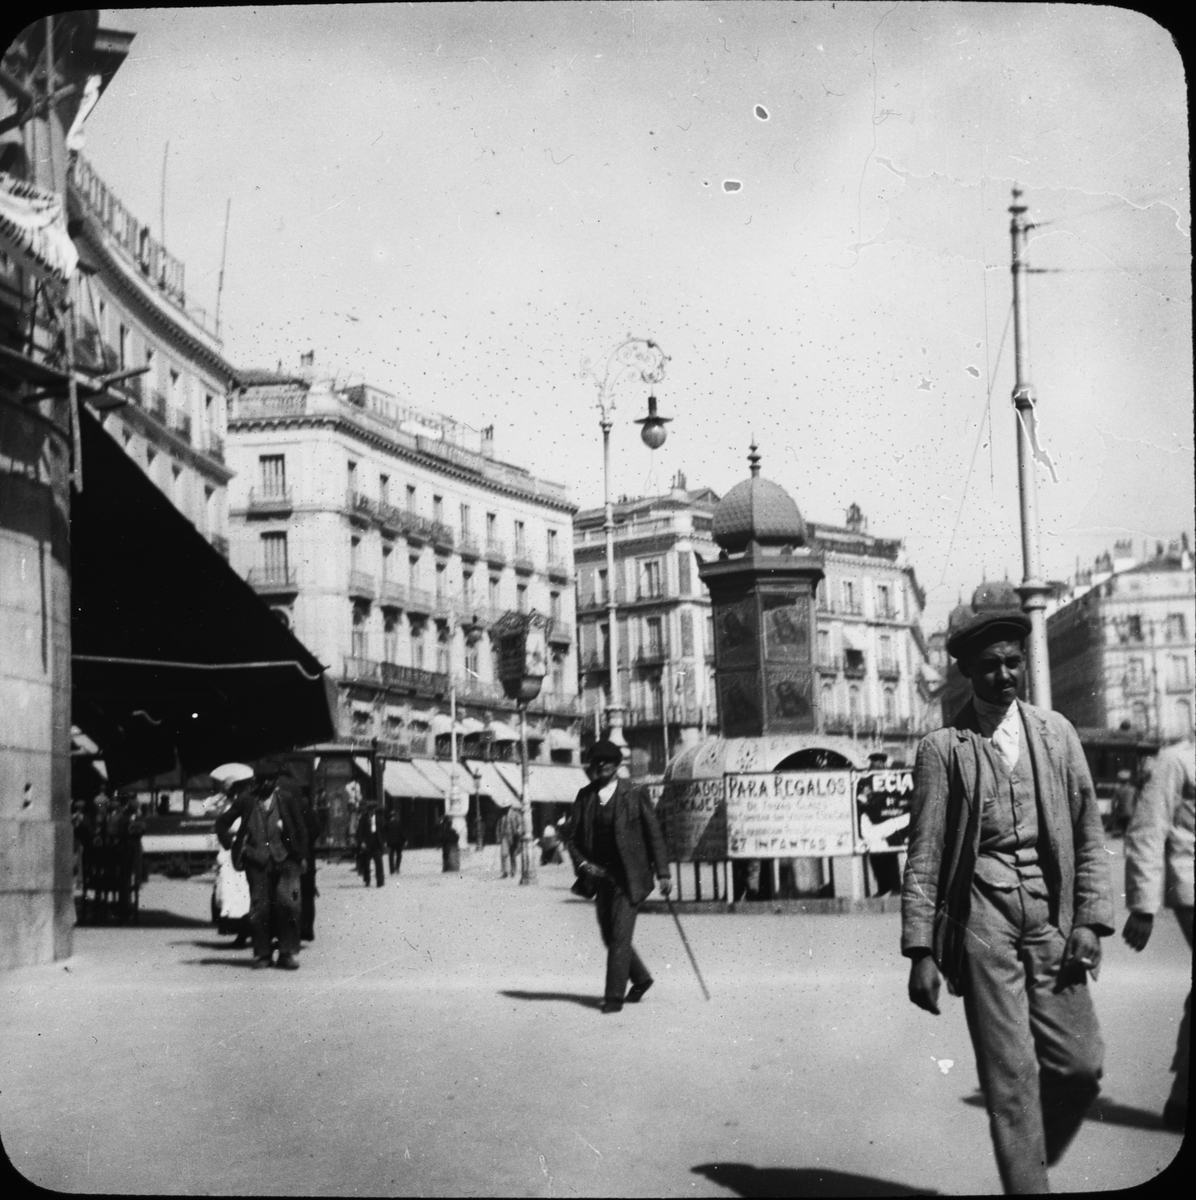 Skioptikonbild med motiv från Puerta del Sol, Madrid.
Bilden har förvarats i kartong märkt: Höstresan 1910. Madrid 9. N:2. Text på bild: "Puerta del Sol".